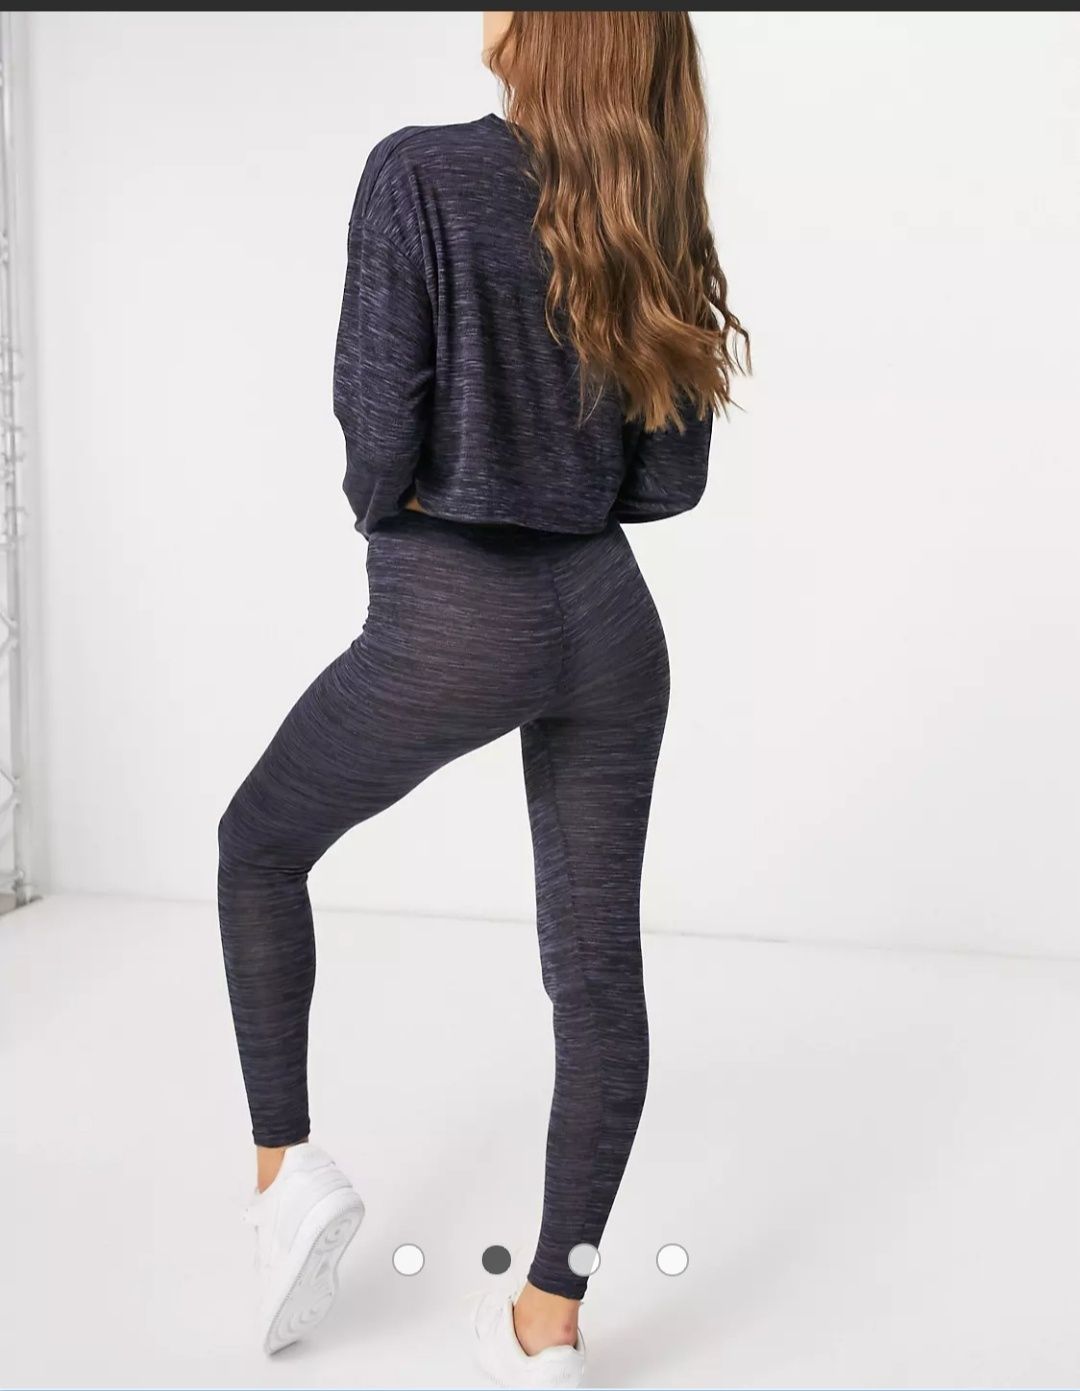 Femme Luxe – Granatowy zestaw top i legginsy 38